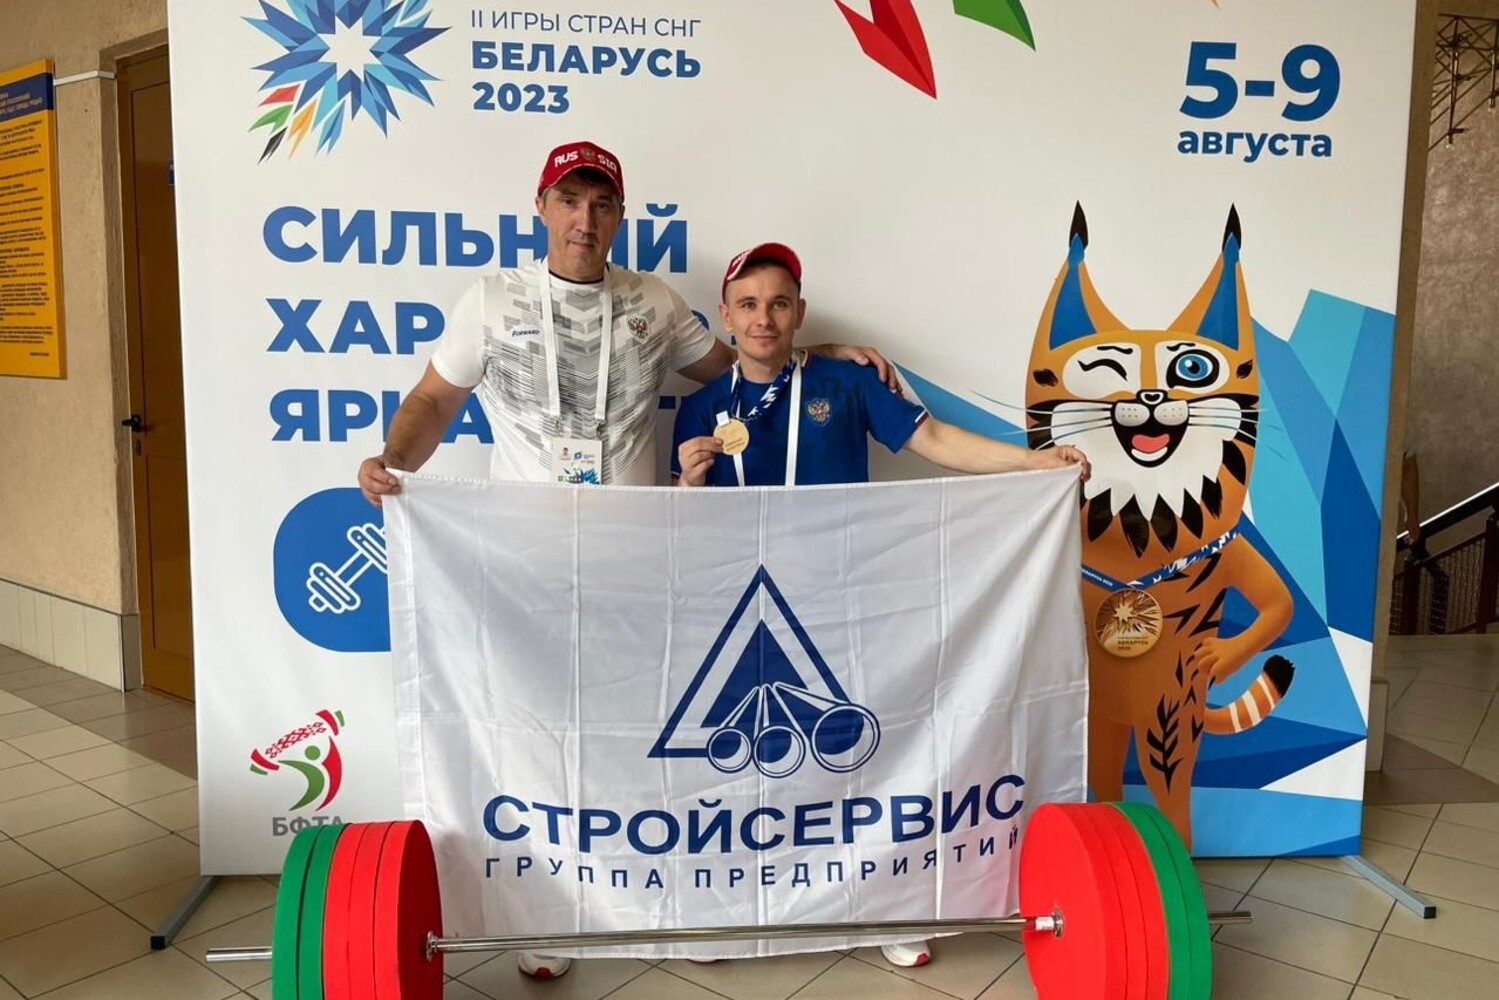 Выступающий при поддержке Стройсервиса тяжелоатлет стал призером международных соревнований в Белоруссии. Стройсервис